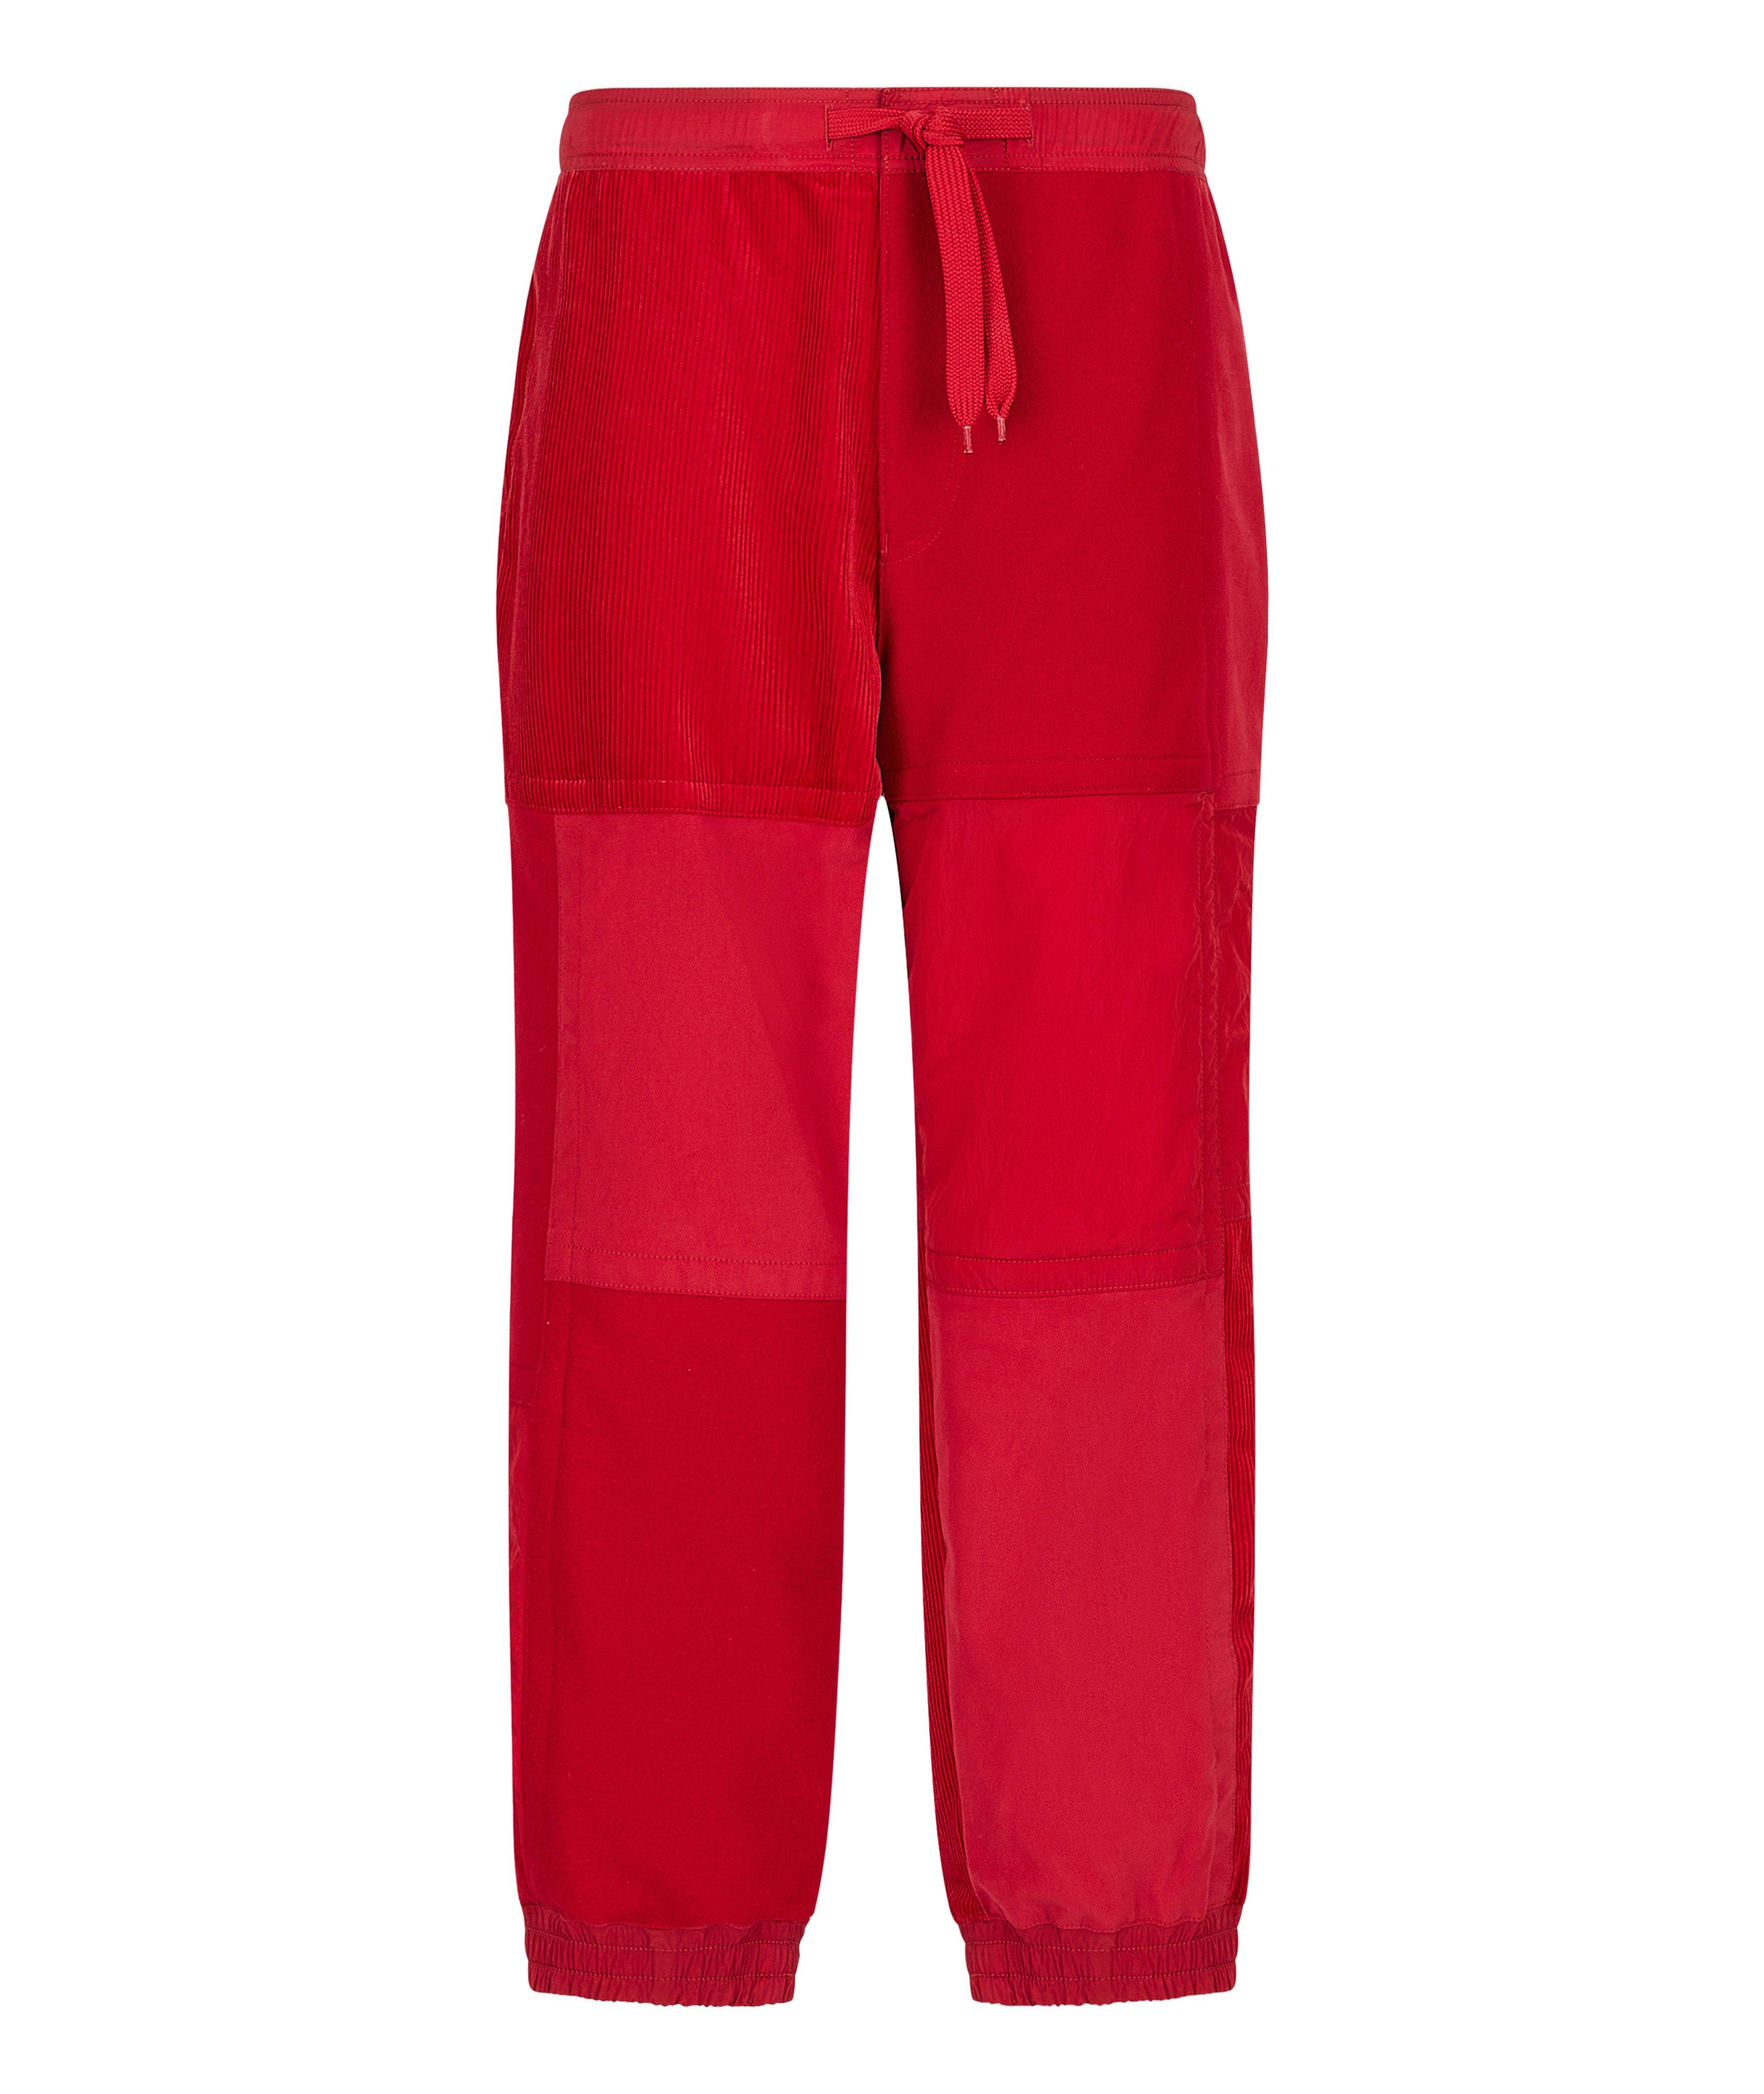 Pantalon sport en coton, collection écoresponsable EArctic image 0